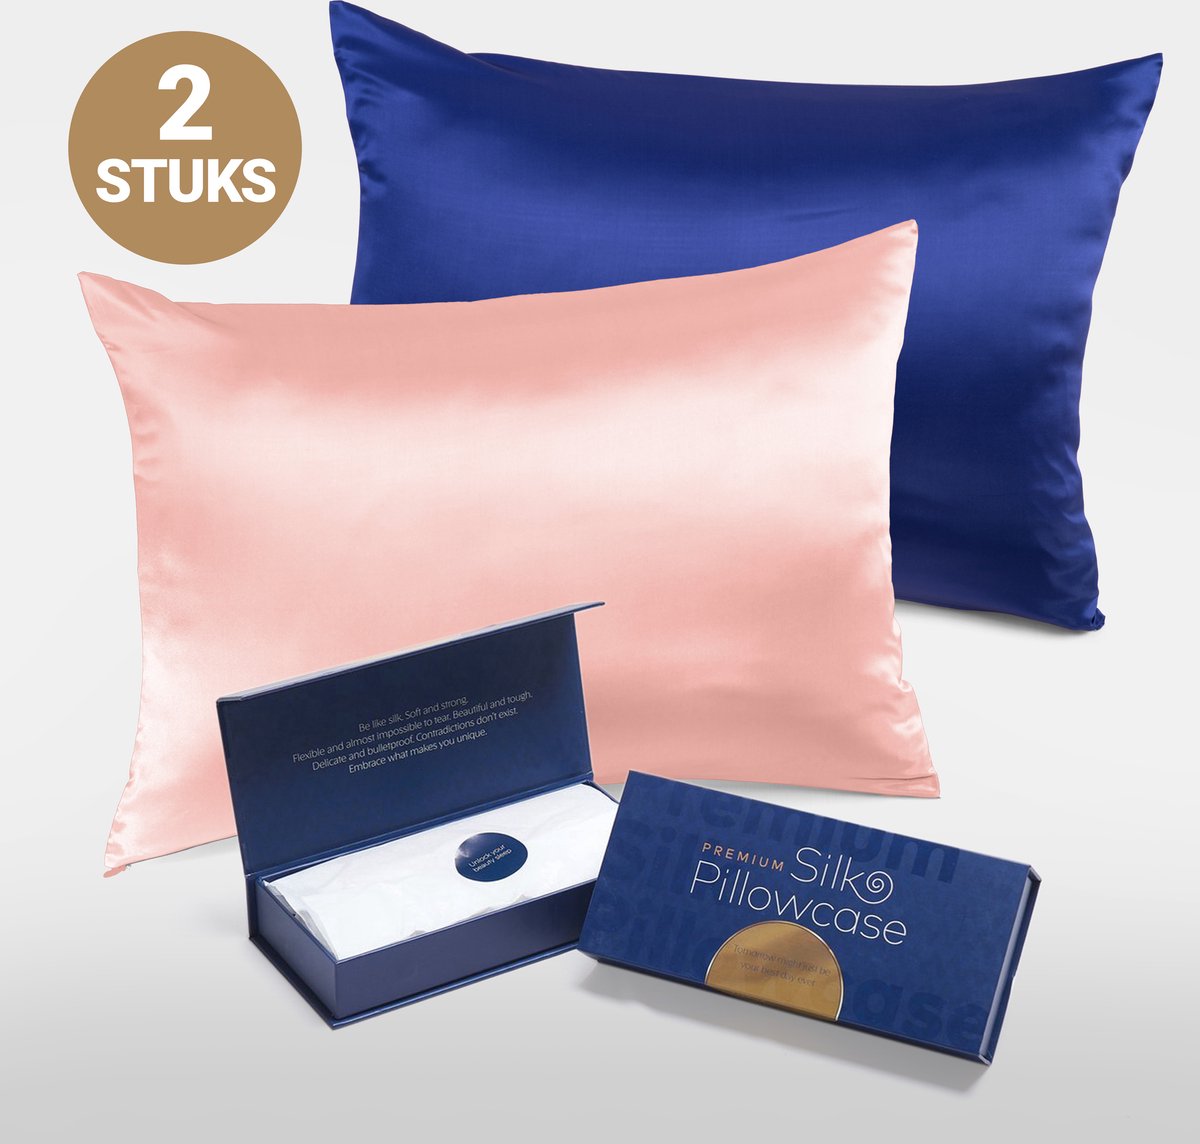 Slowwave Premium Silk Pillowcase - Extra voordelig colorpack: Cherry Blossom (roze) en Cloud Burst (blauw) - Ervaar het beste zijden kussensloop - 100% Mulberry zijde - 22 momme - Hoogste kwaliteit (grade 6A) - 60x70cm